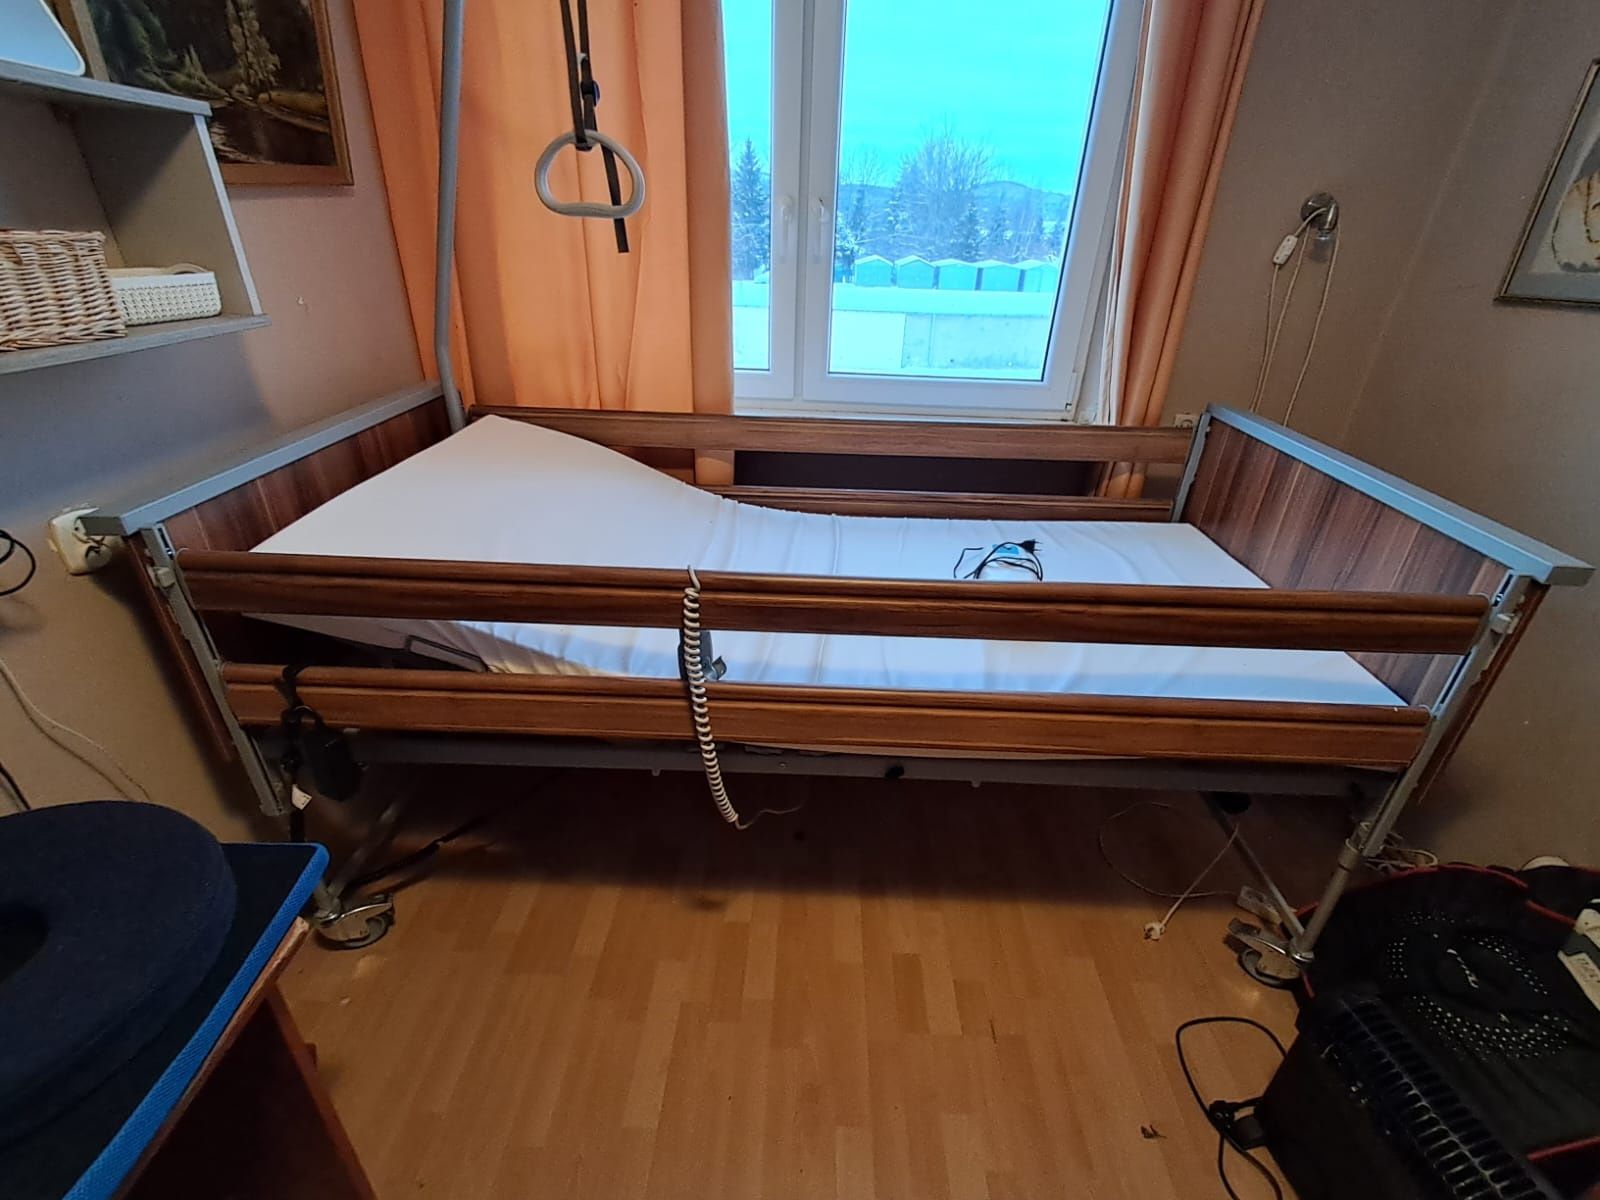 Łóżko rehabilitacyjne i materac przeciwodlezynowy